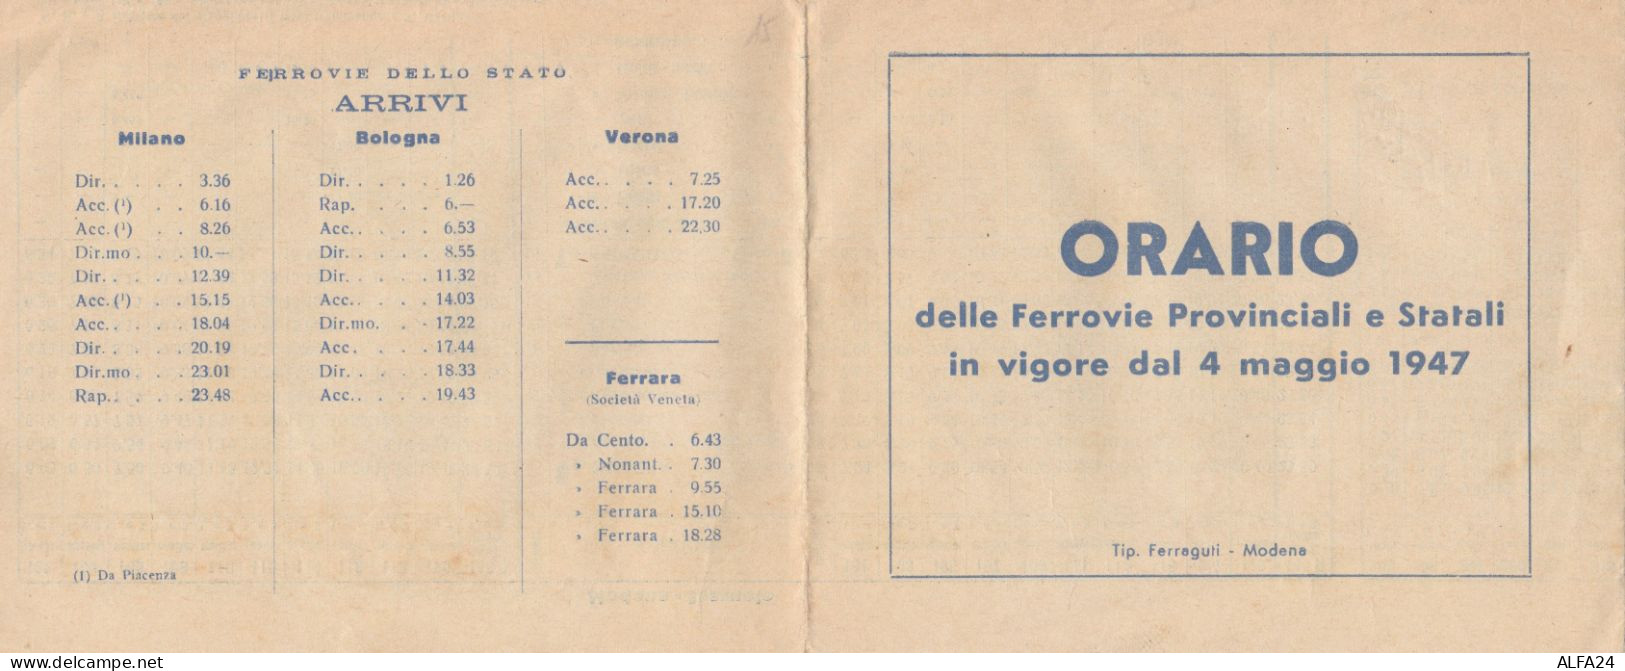 ORARIO FERROVIE PROVINCIALI E STATALI 1947 (XF381 - Europa